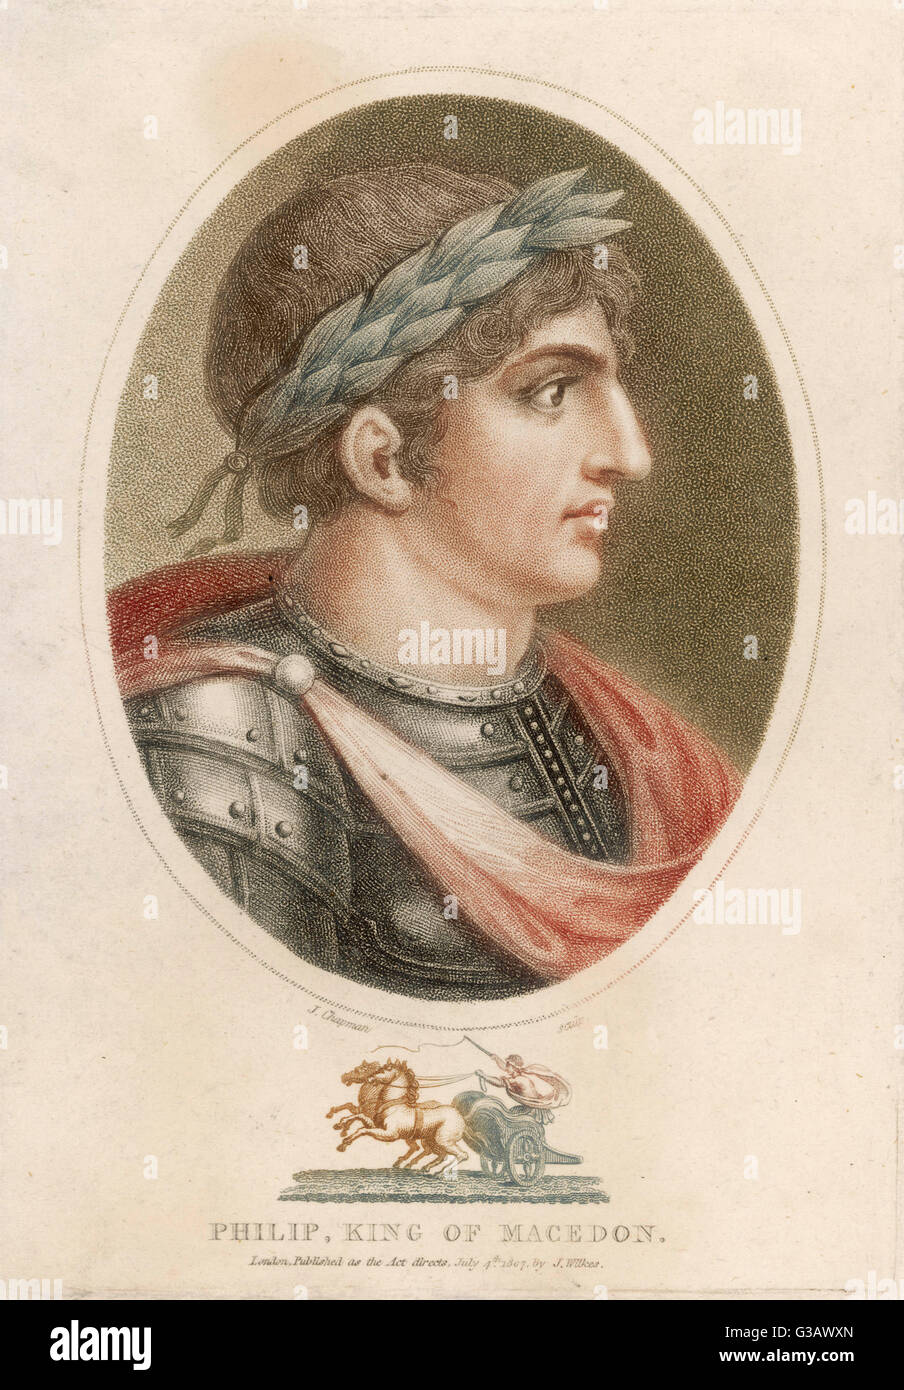 König Philipp von Makedonien griechische Herrscher und Soldat, ganz Griechenland erobert und besiegte die Perser;  Vater von Alexander Date: 382-336 v. Chr. Stockfoto